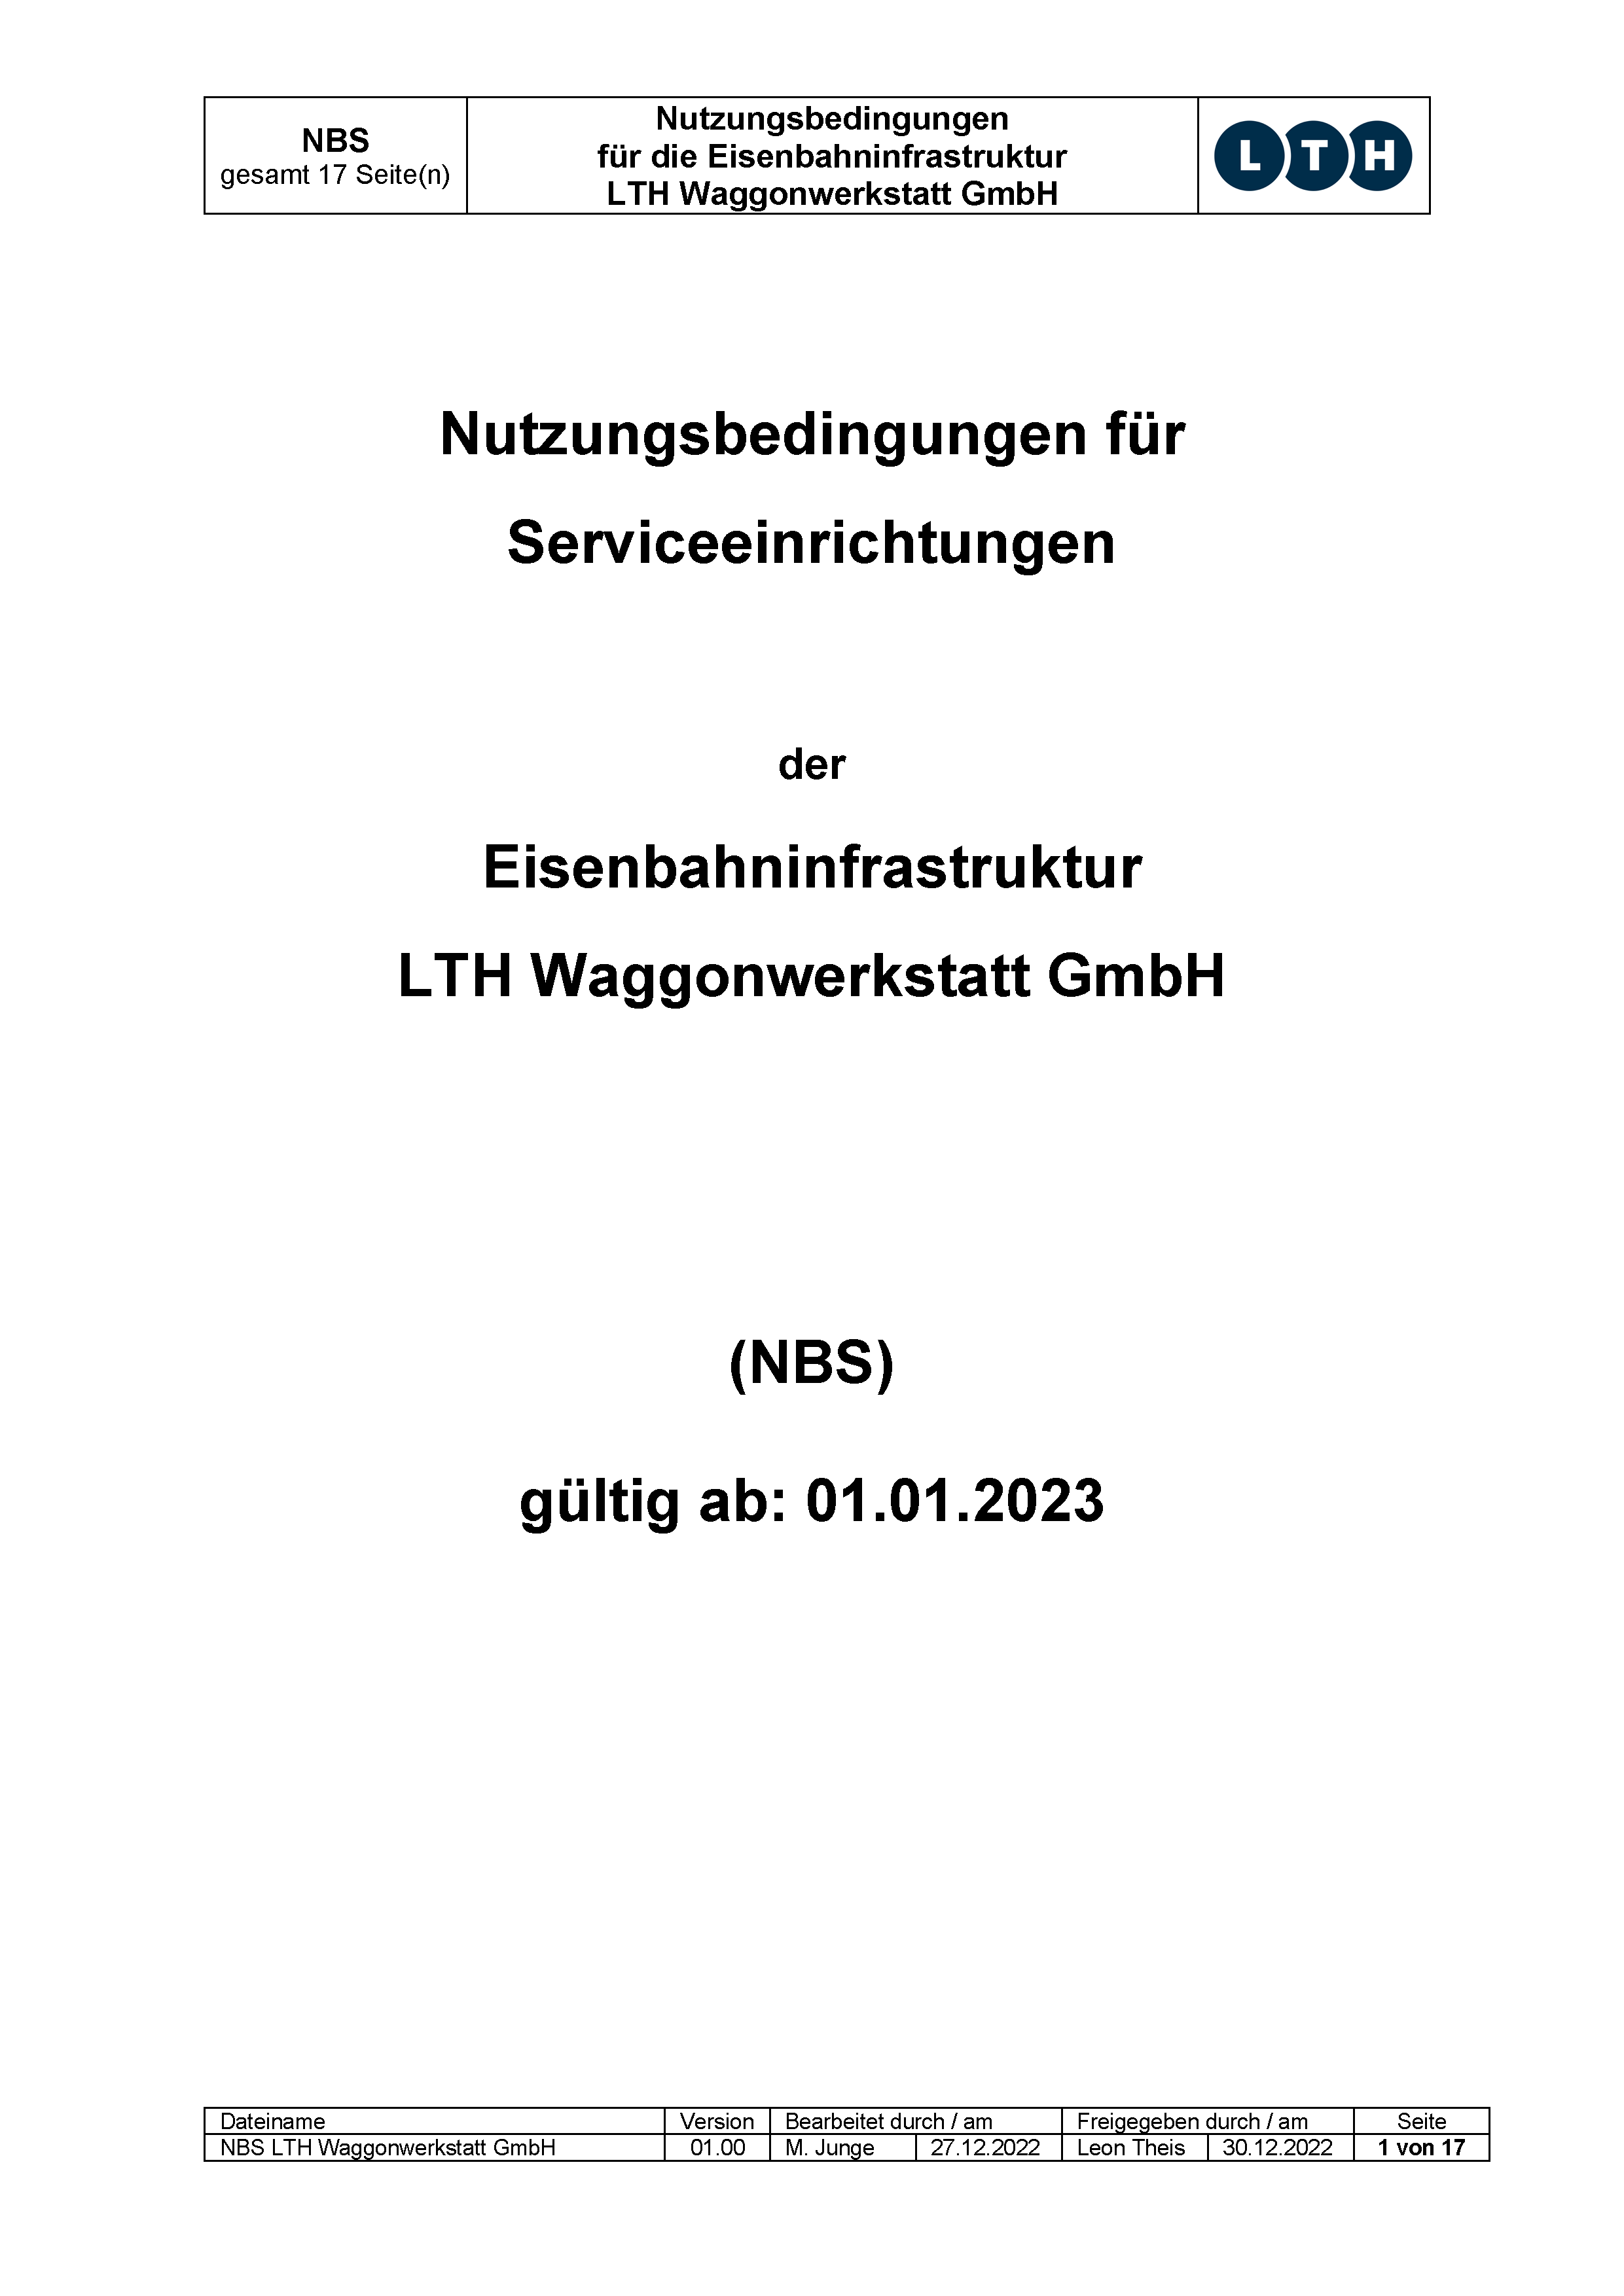 Downloads - Das Bild zeigt die aktuellen Verkaufs- und Lieferbedingungen für die LTH Waggonwerkstatt GmbH.